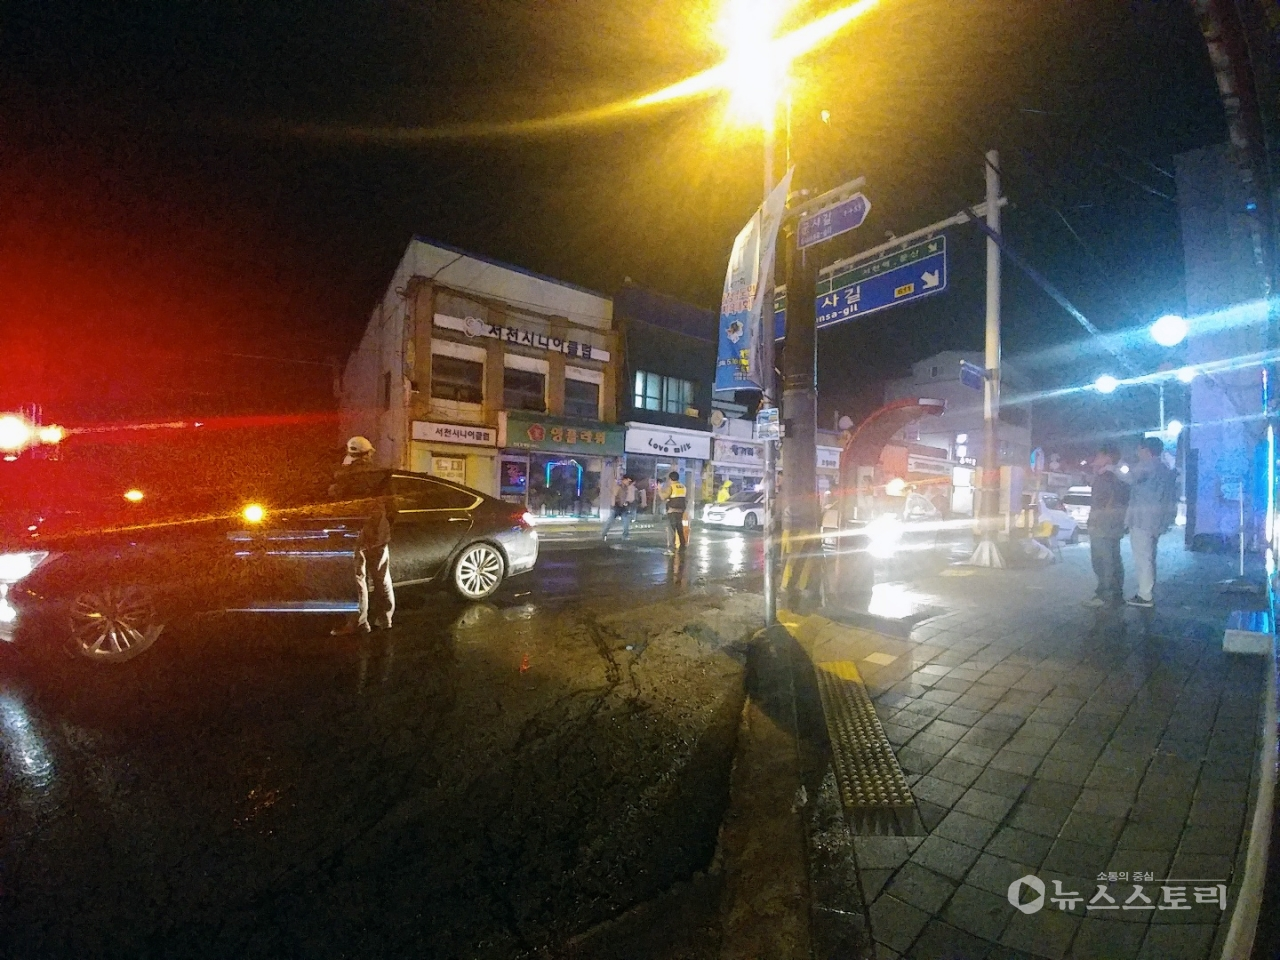 25일 밤 도로 한 가운데 위치한 맨홀뚜껑이 열려 지나가던 차량이 파손됐다.